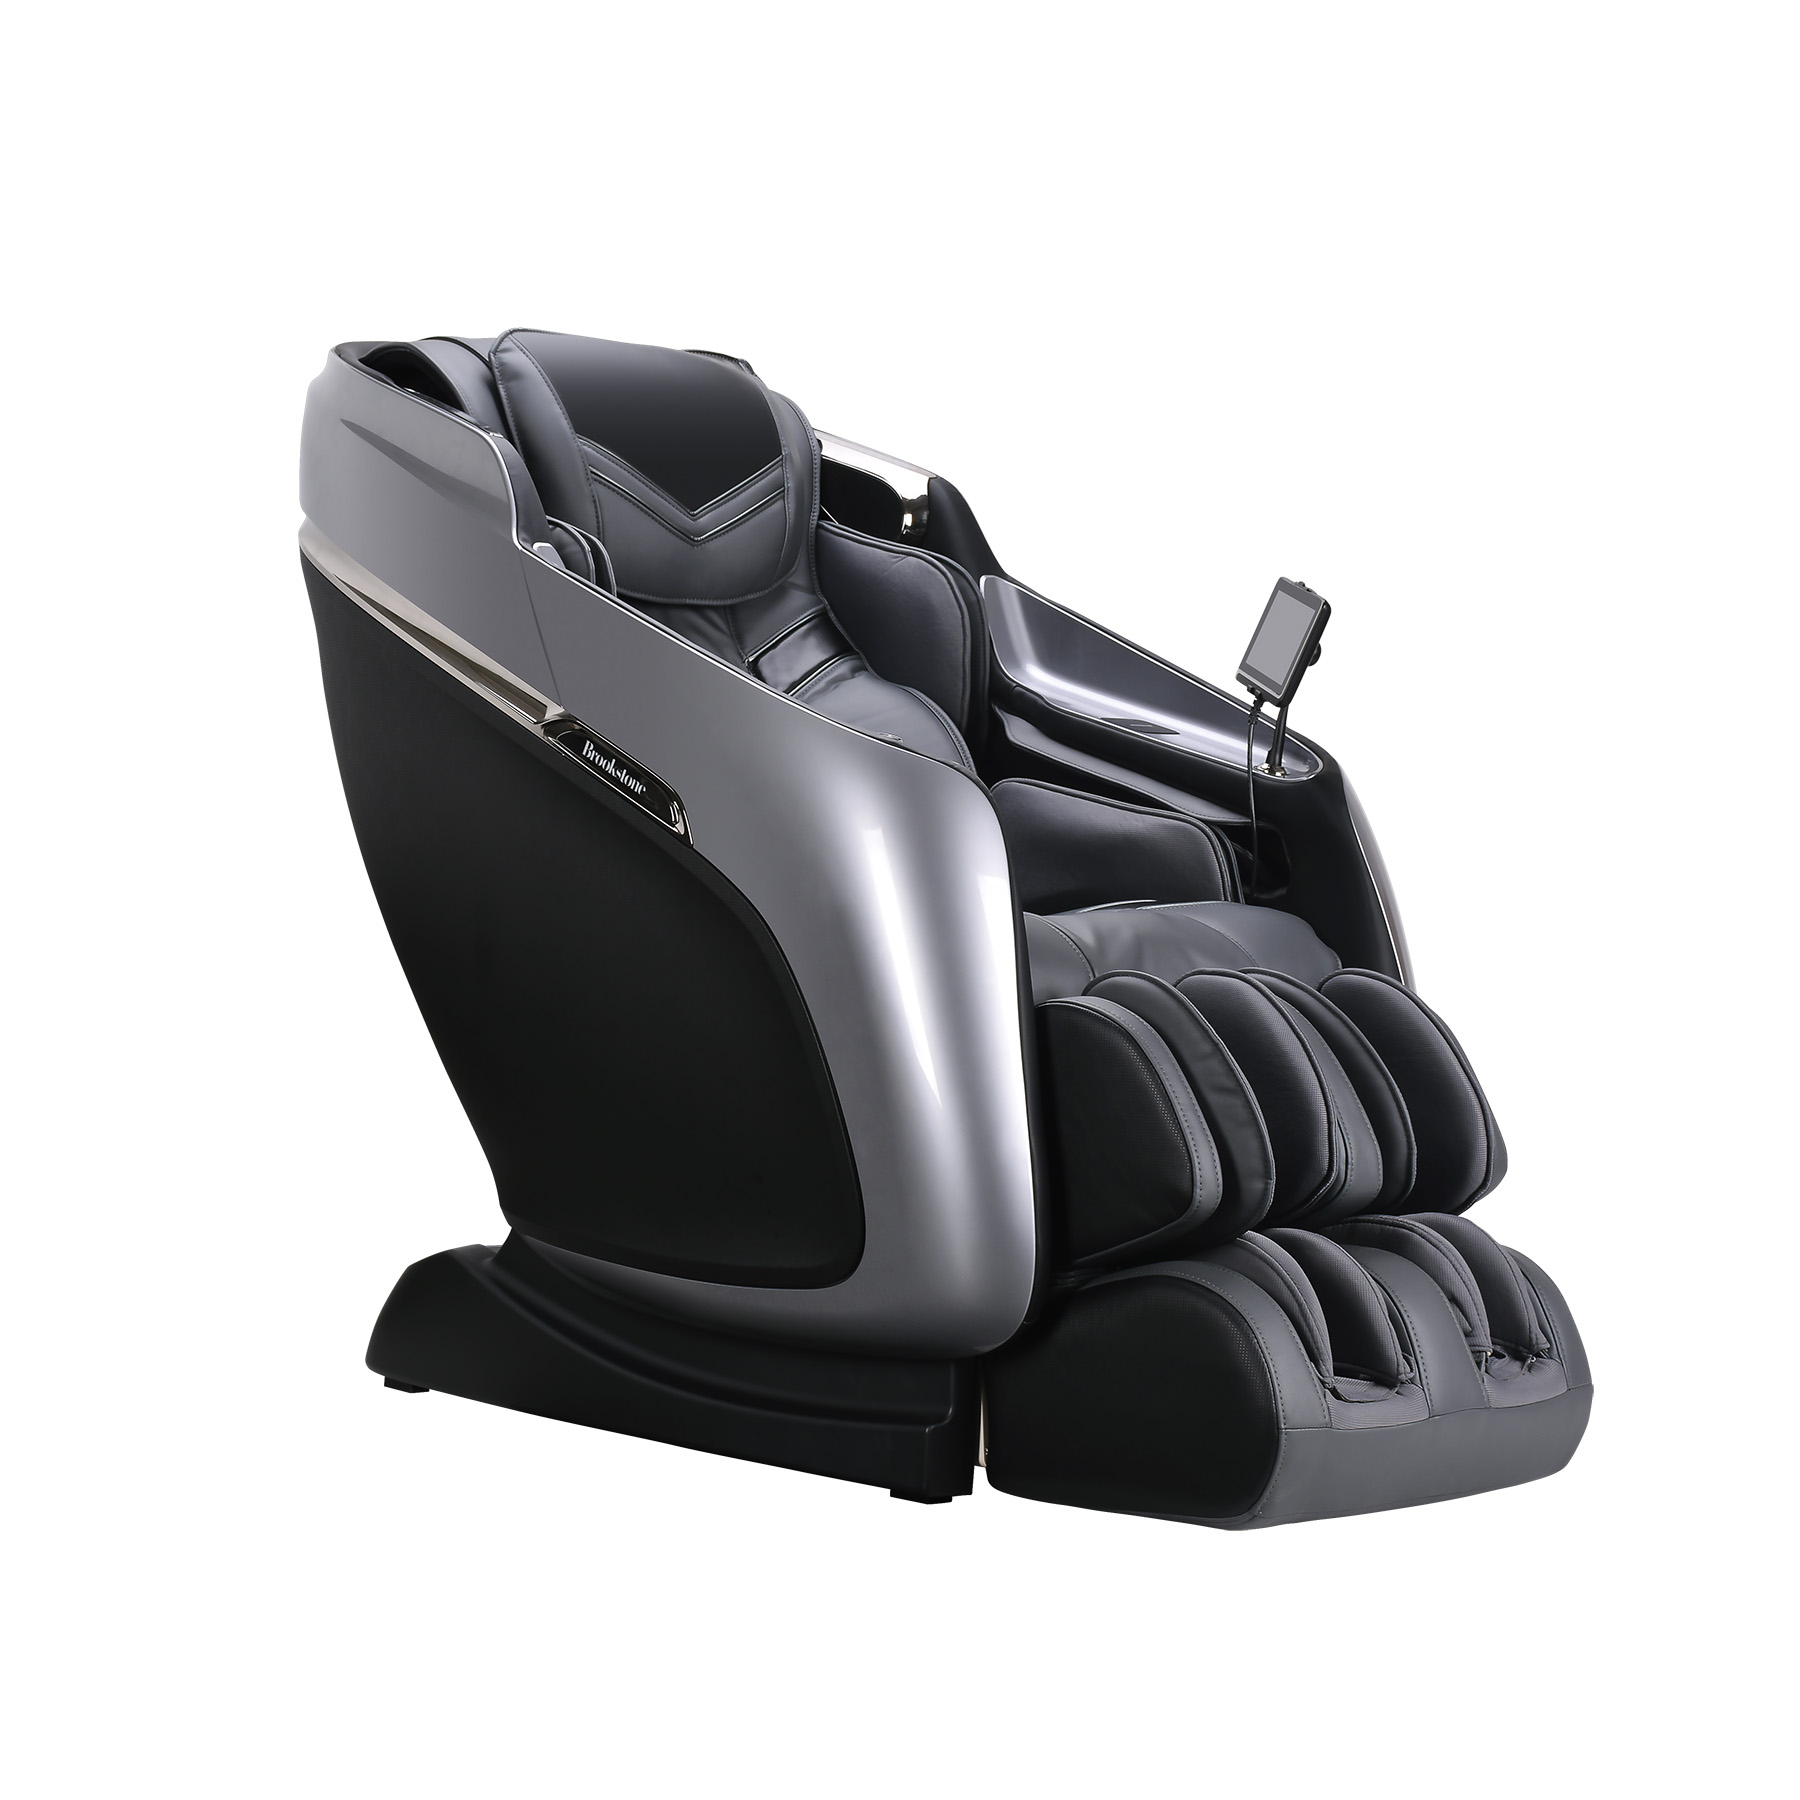 Brookstone Mach Ix 4d Vario Massage Chair Reviews Fernande Hendrick